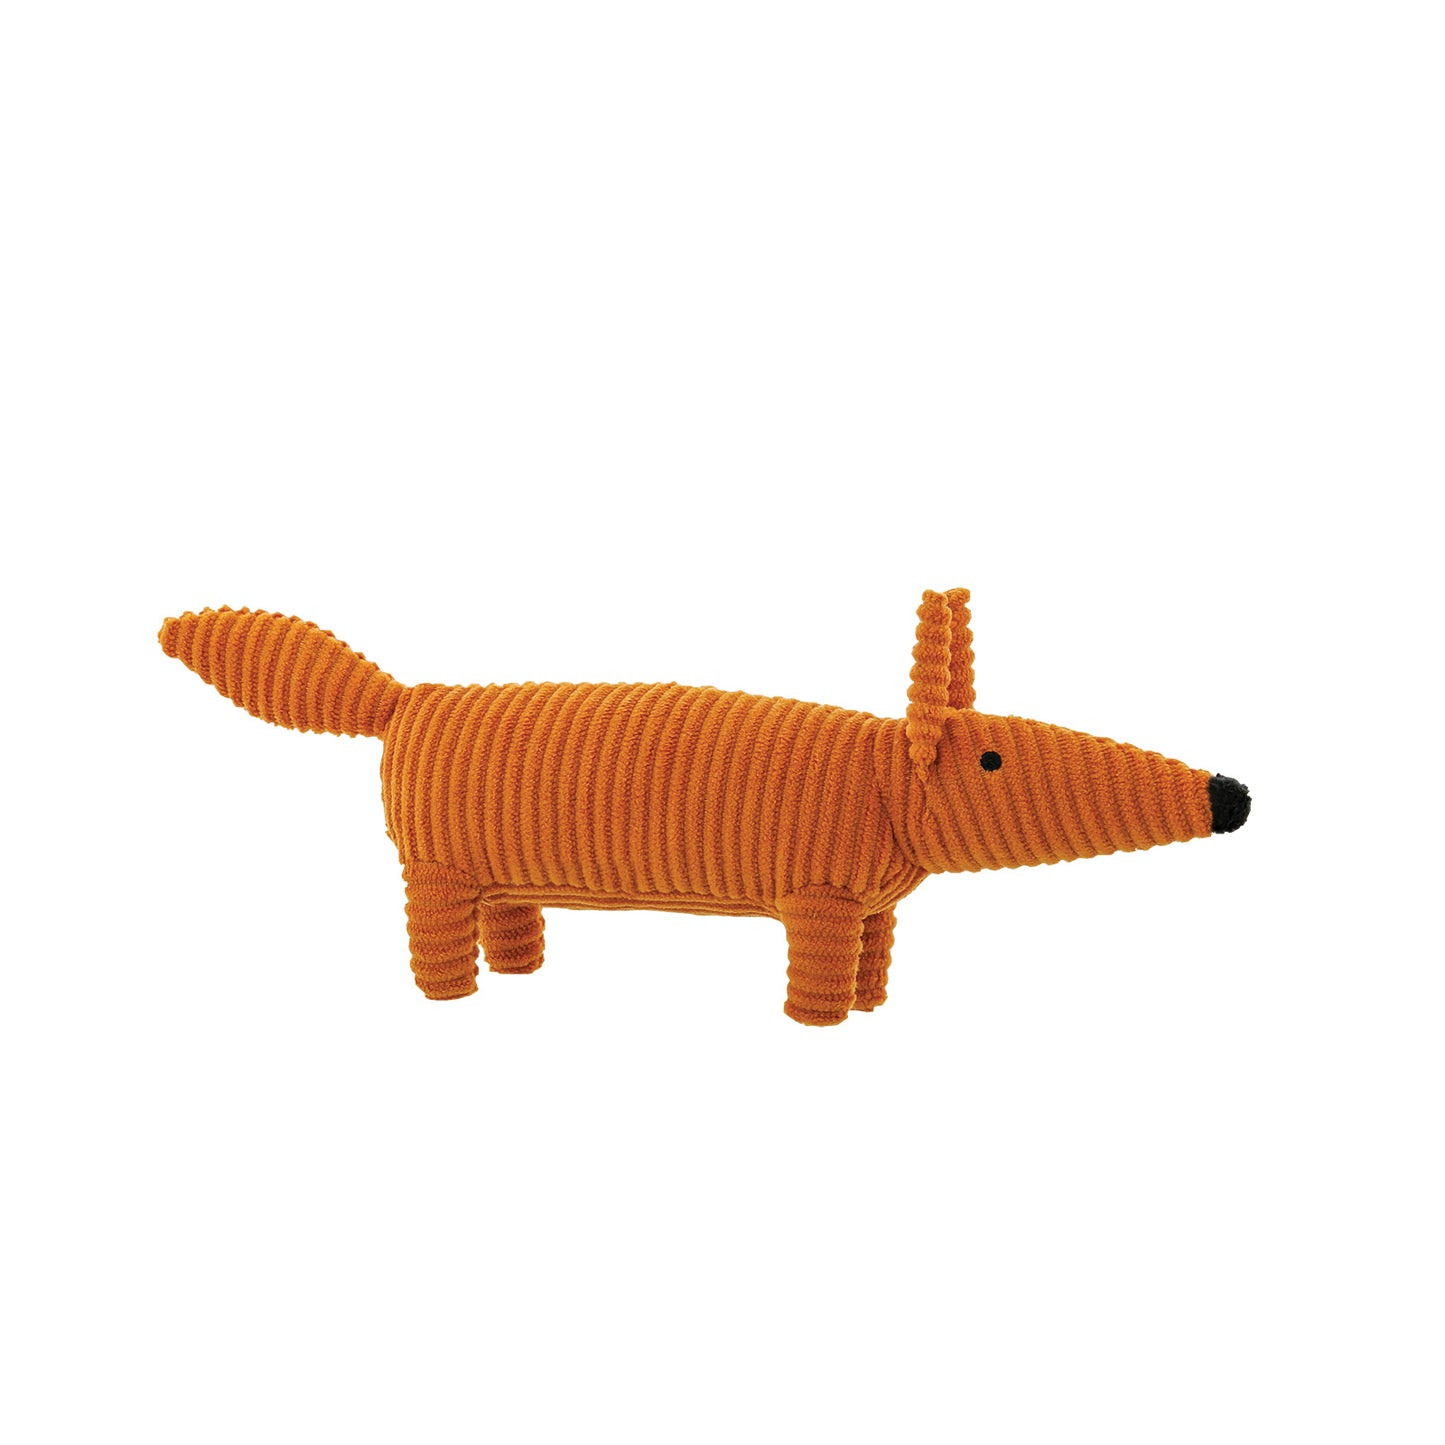 Scion Mr Fox Small Plush Toy